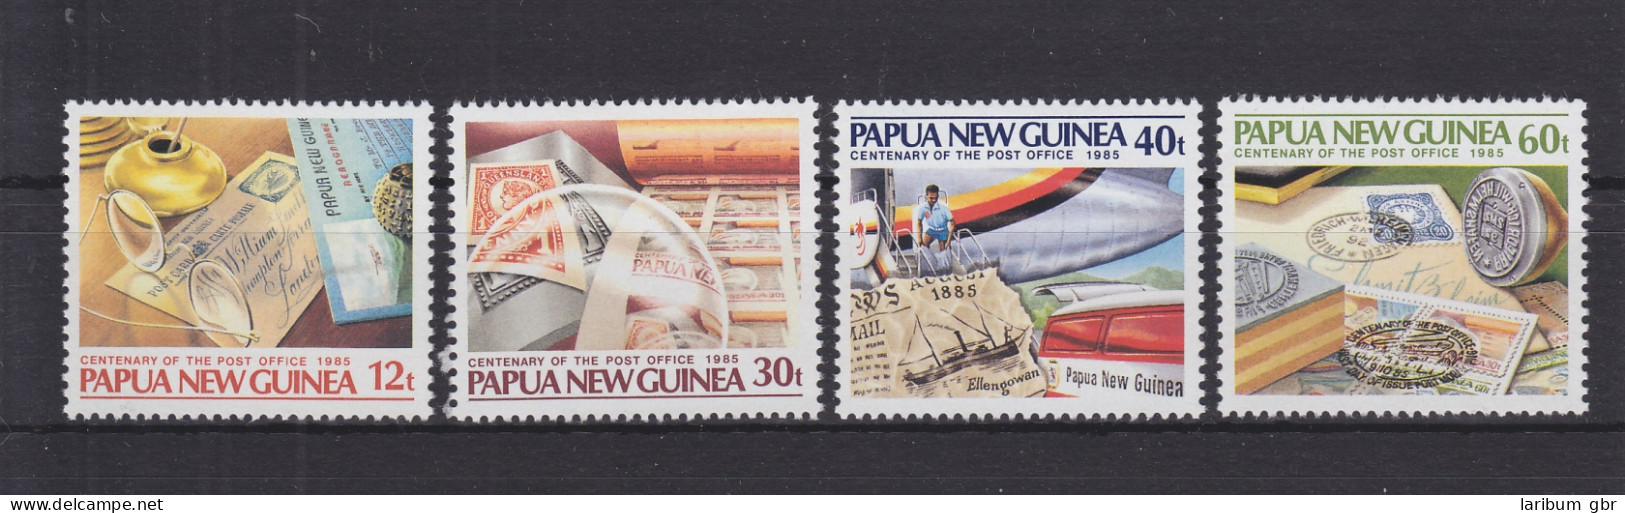 Papua-Neuguinea 504-507 Postfrisch 100 Jahre Postdienst, MNH #GE275 - Papouasie-Nouvelle-Guinée